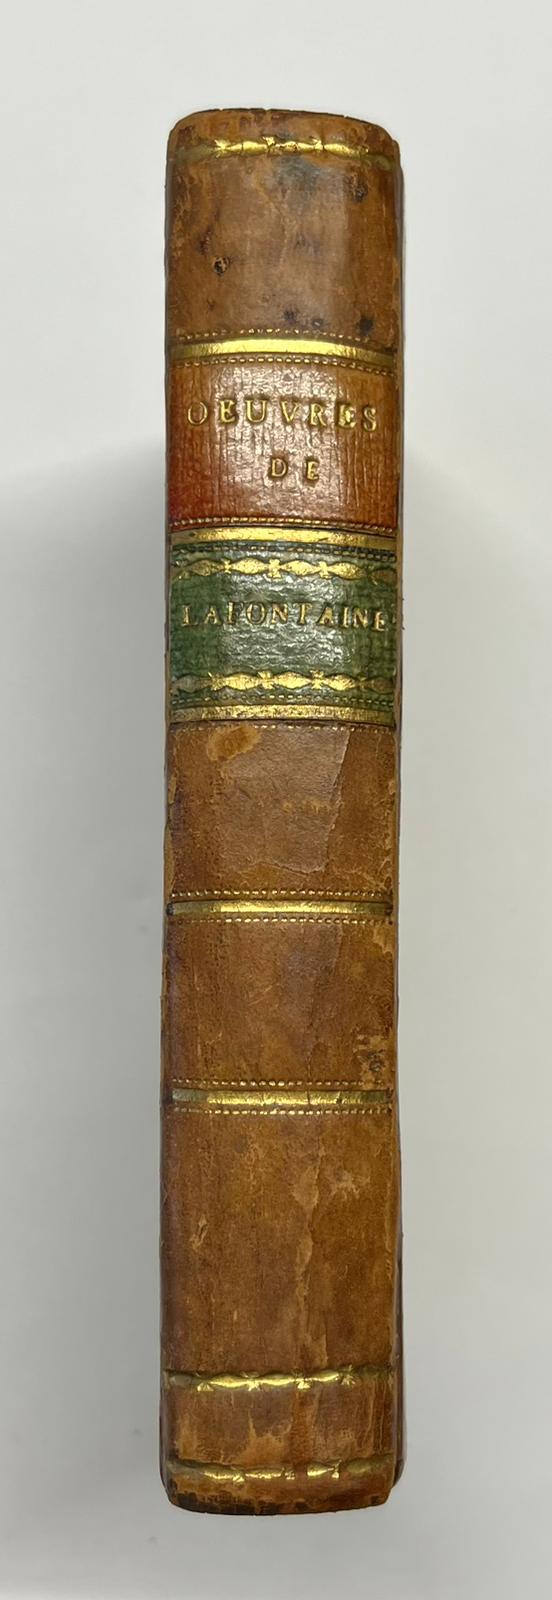 La Fontaine, 1809, French | Oeuvres de La Fontaine, Paris, Imprimerie de Mame, Frères, 1809, 412 pp.